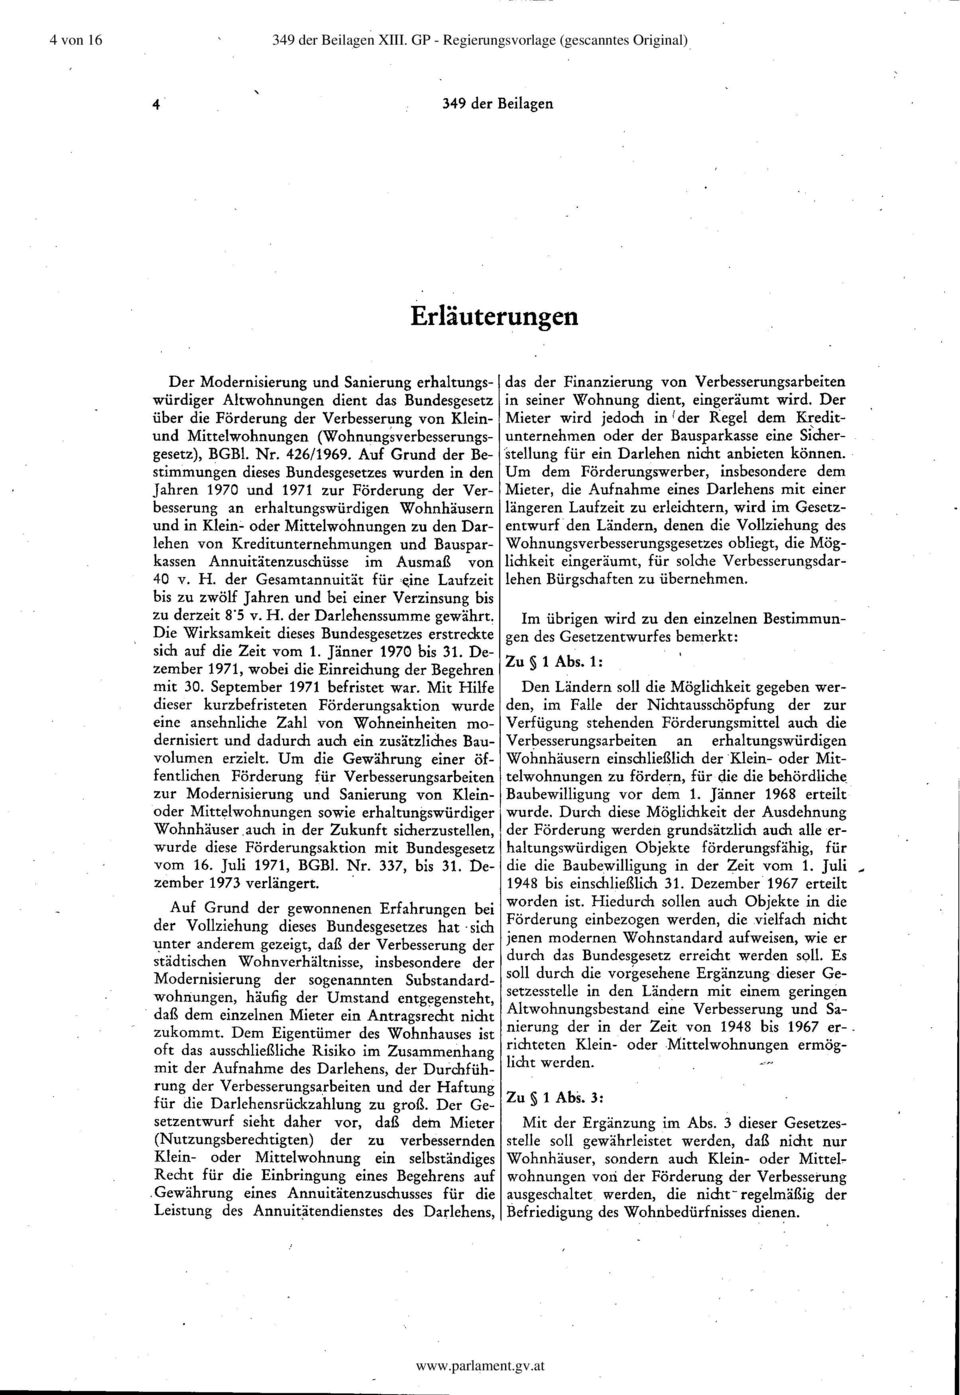 Verbesserung von Kleinund Mittelwohnungen (Wohnung~verbesserungsgesetz), BGBl. Nr. 426/1969.